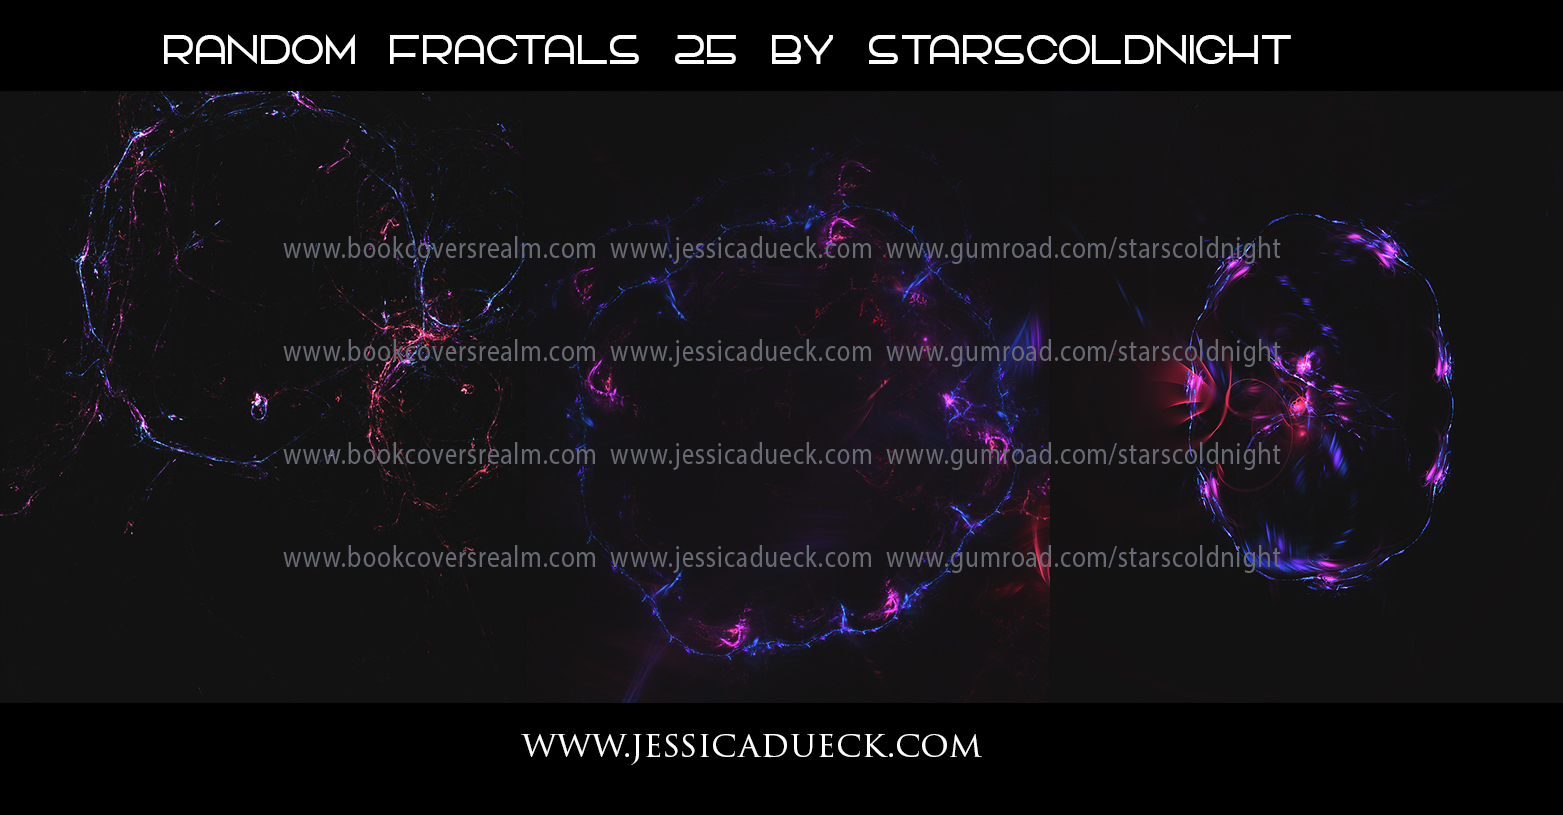 Random fractals 25 by Starscoldnight